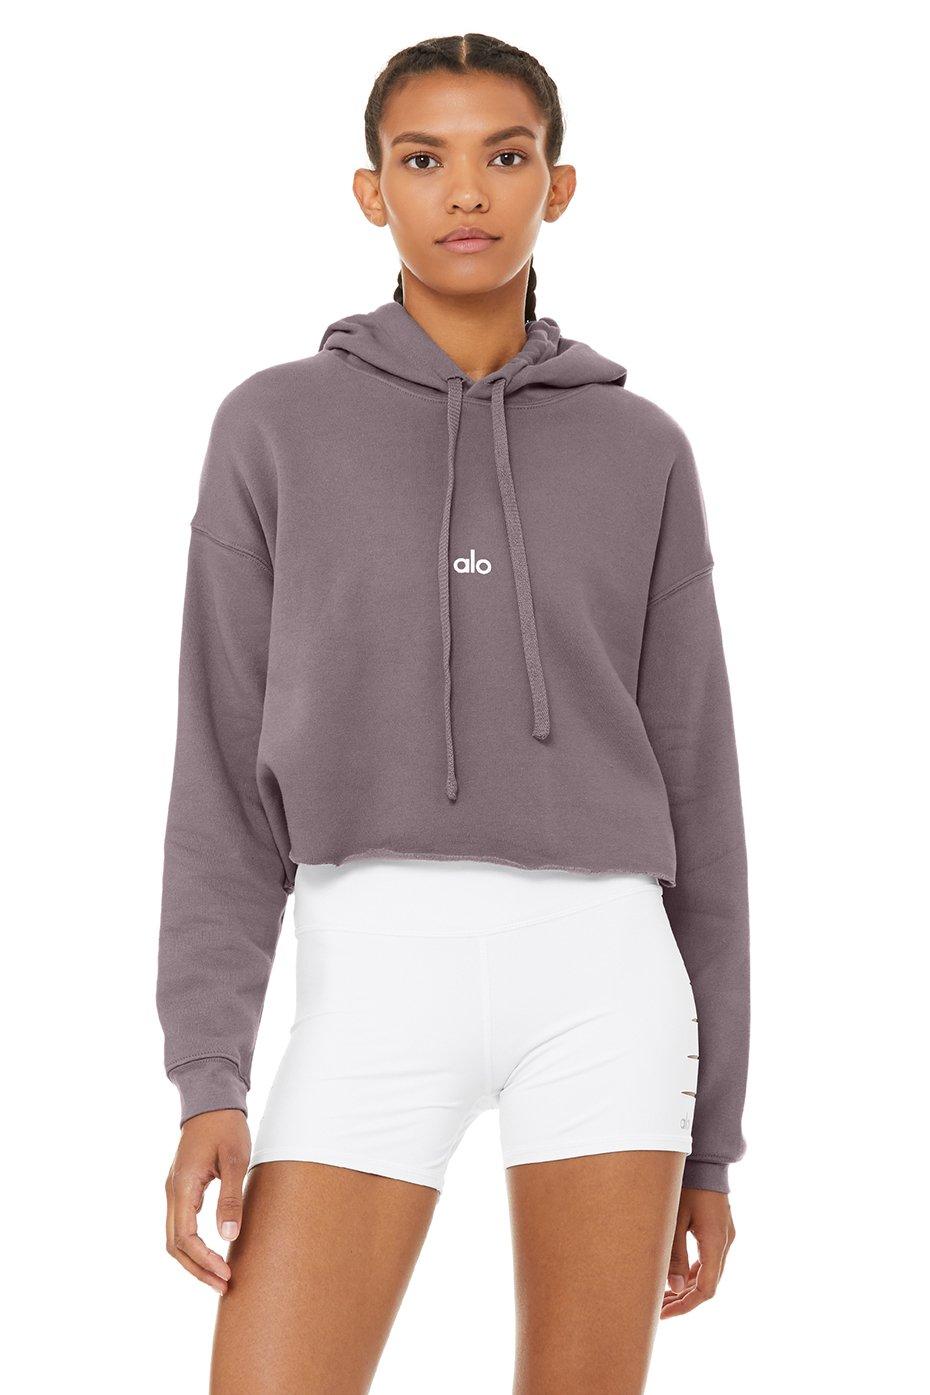 Details about   Alo Yoga Women's Cropped Sweatshirt Choose SZ/color 